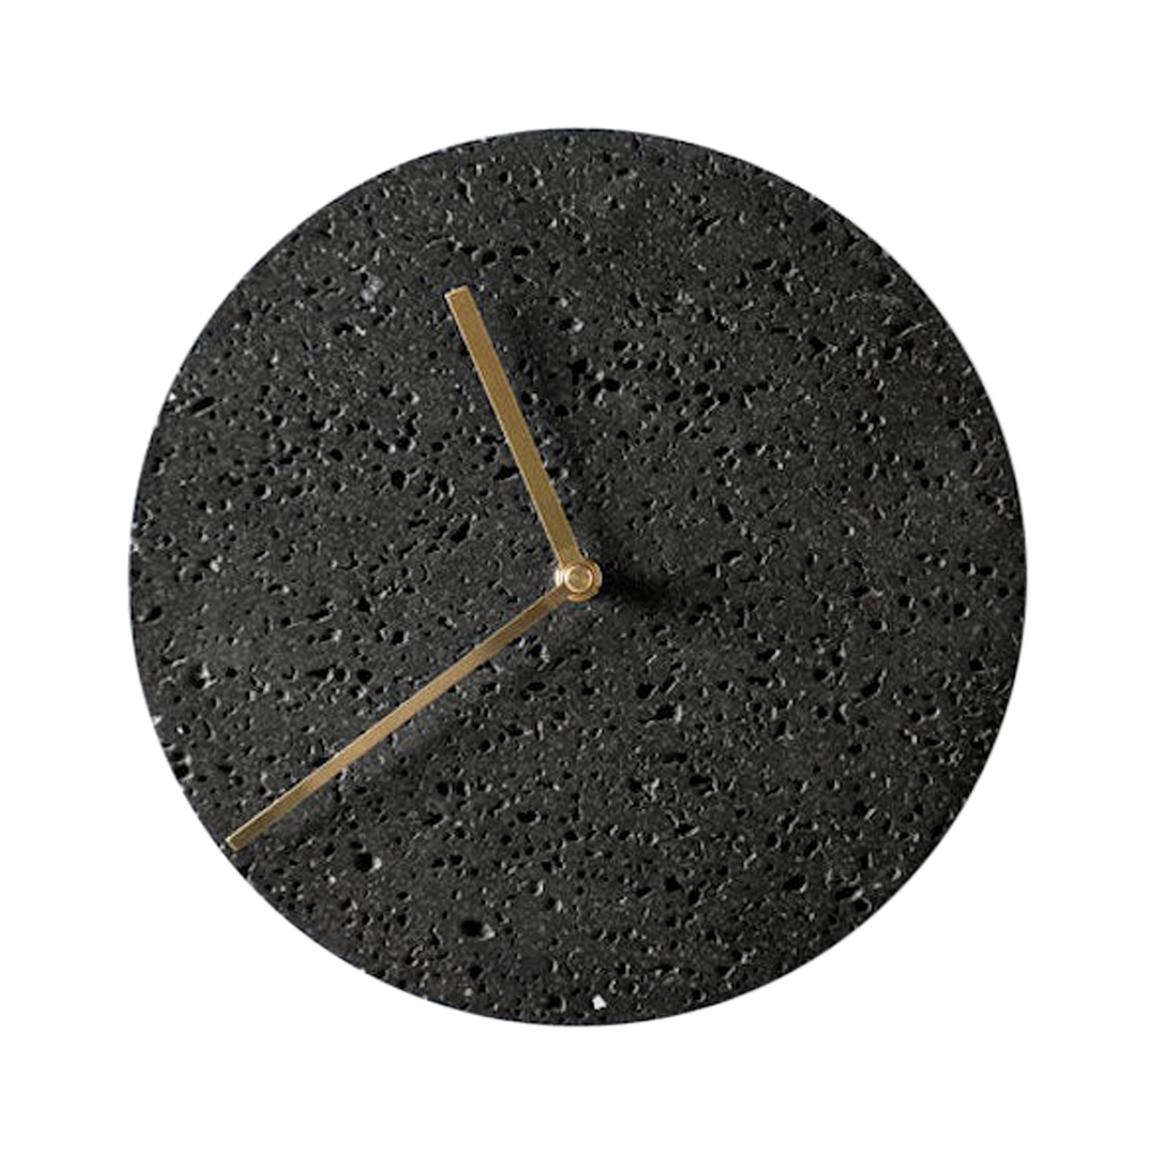 Contemporary Wall Clock 'Moment' in Black Lava Stone